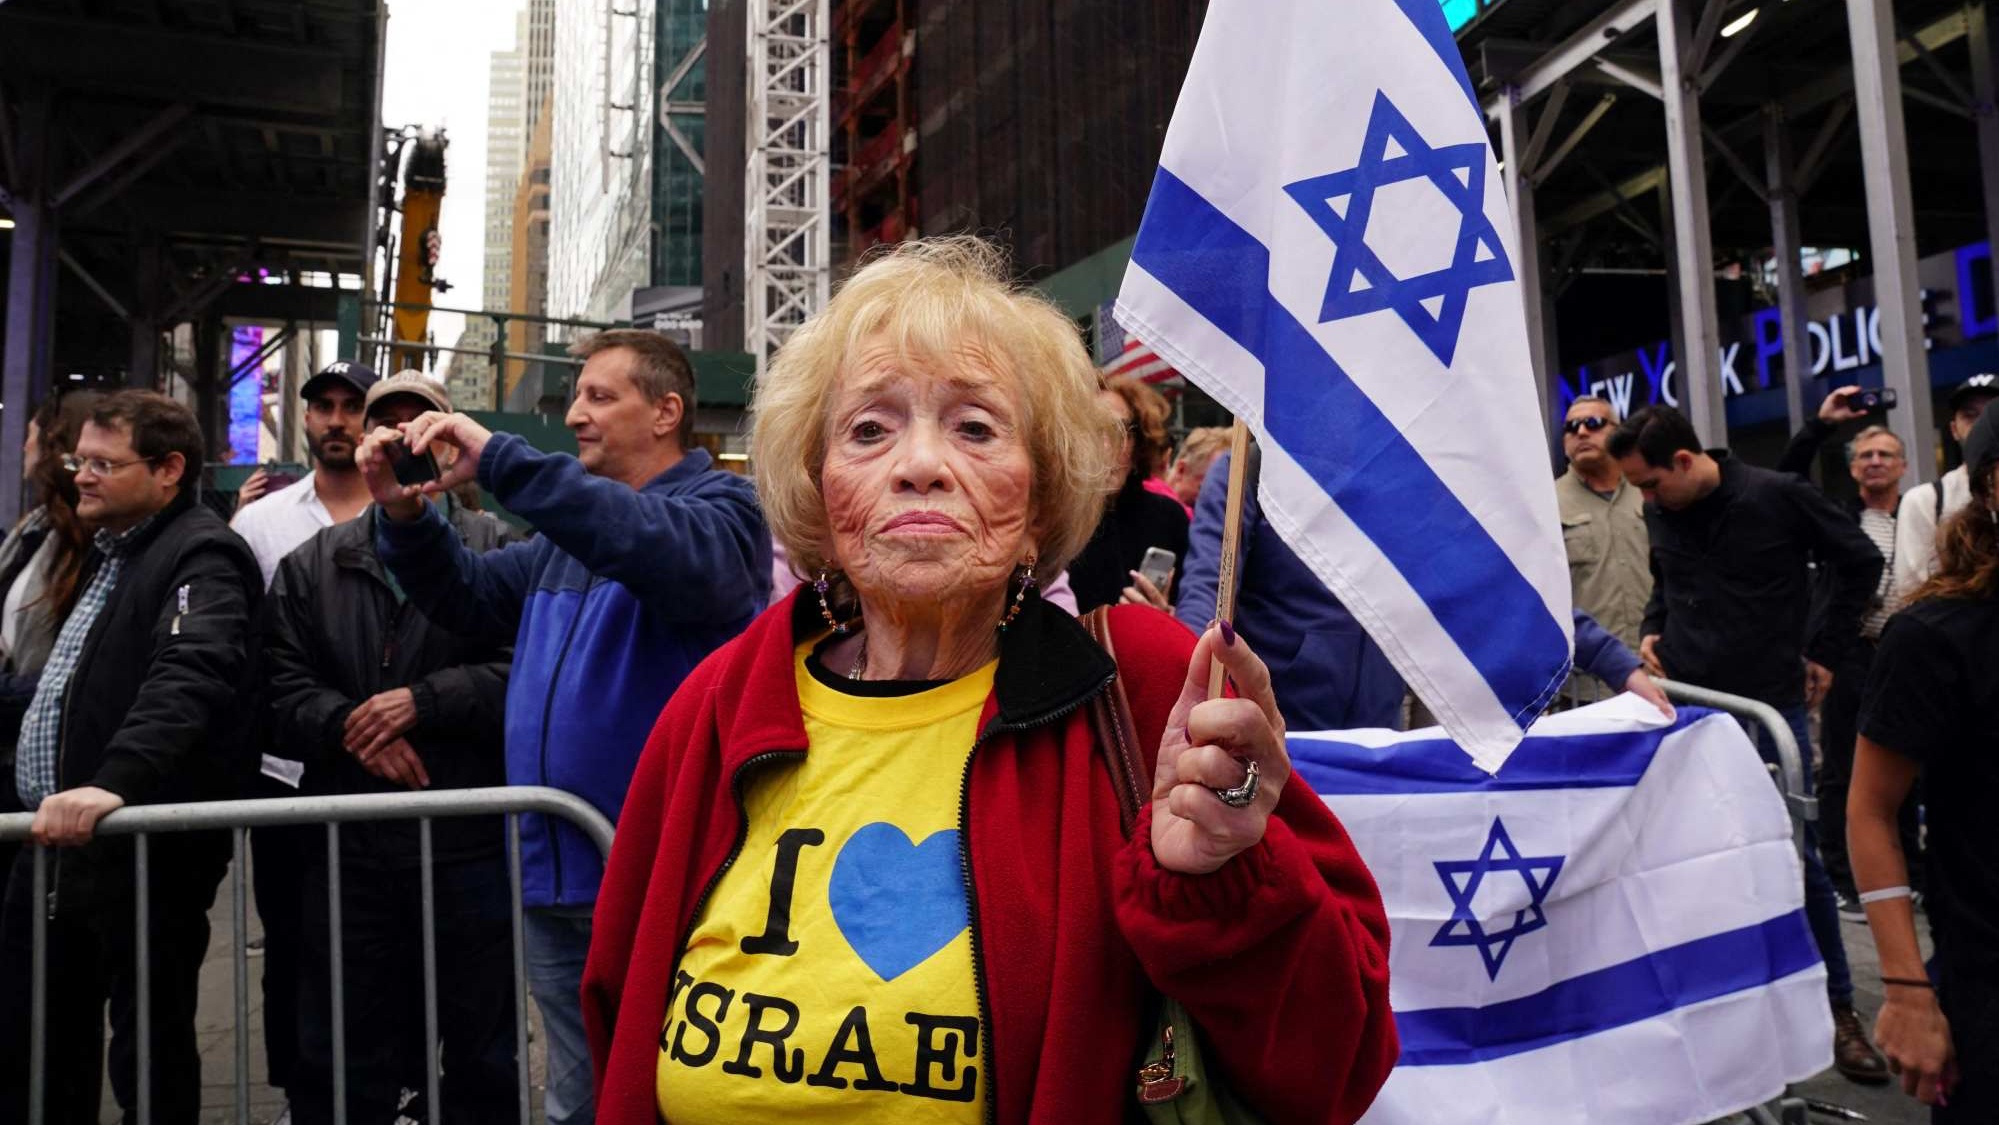 مؤيدو إسرائيل يواجهون متظاهرين مؤيدين للفلسطينيين في ساحة تايمز سكوير في نيويورك بالولايات المتحدة الأميركية يوم الأحد. (أ ف ب)